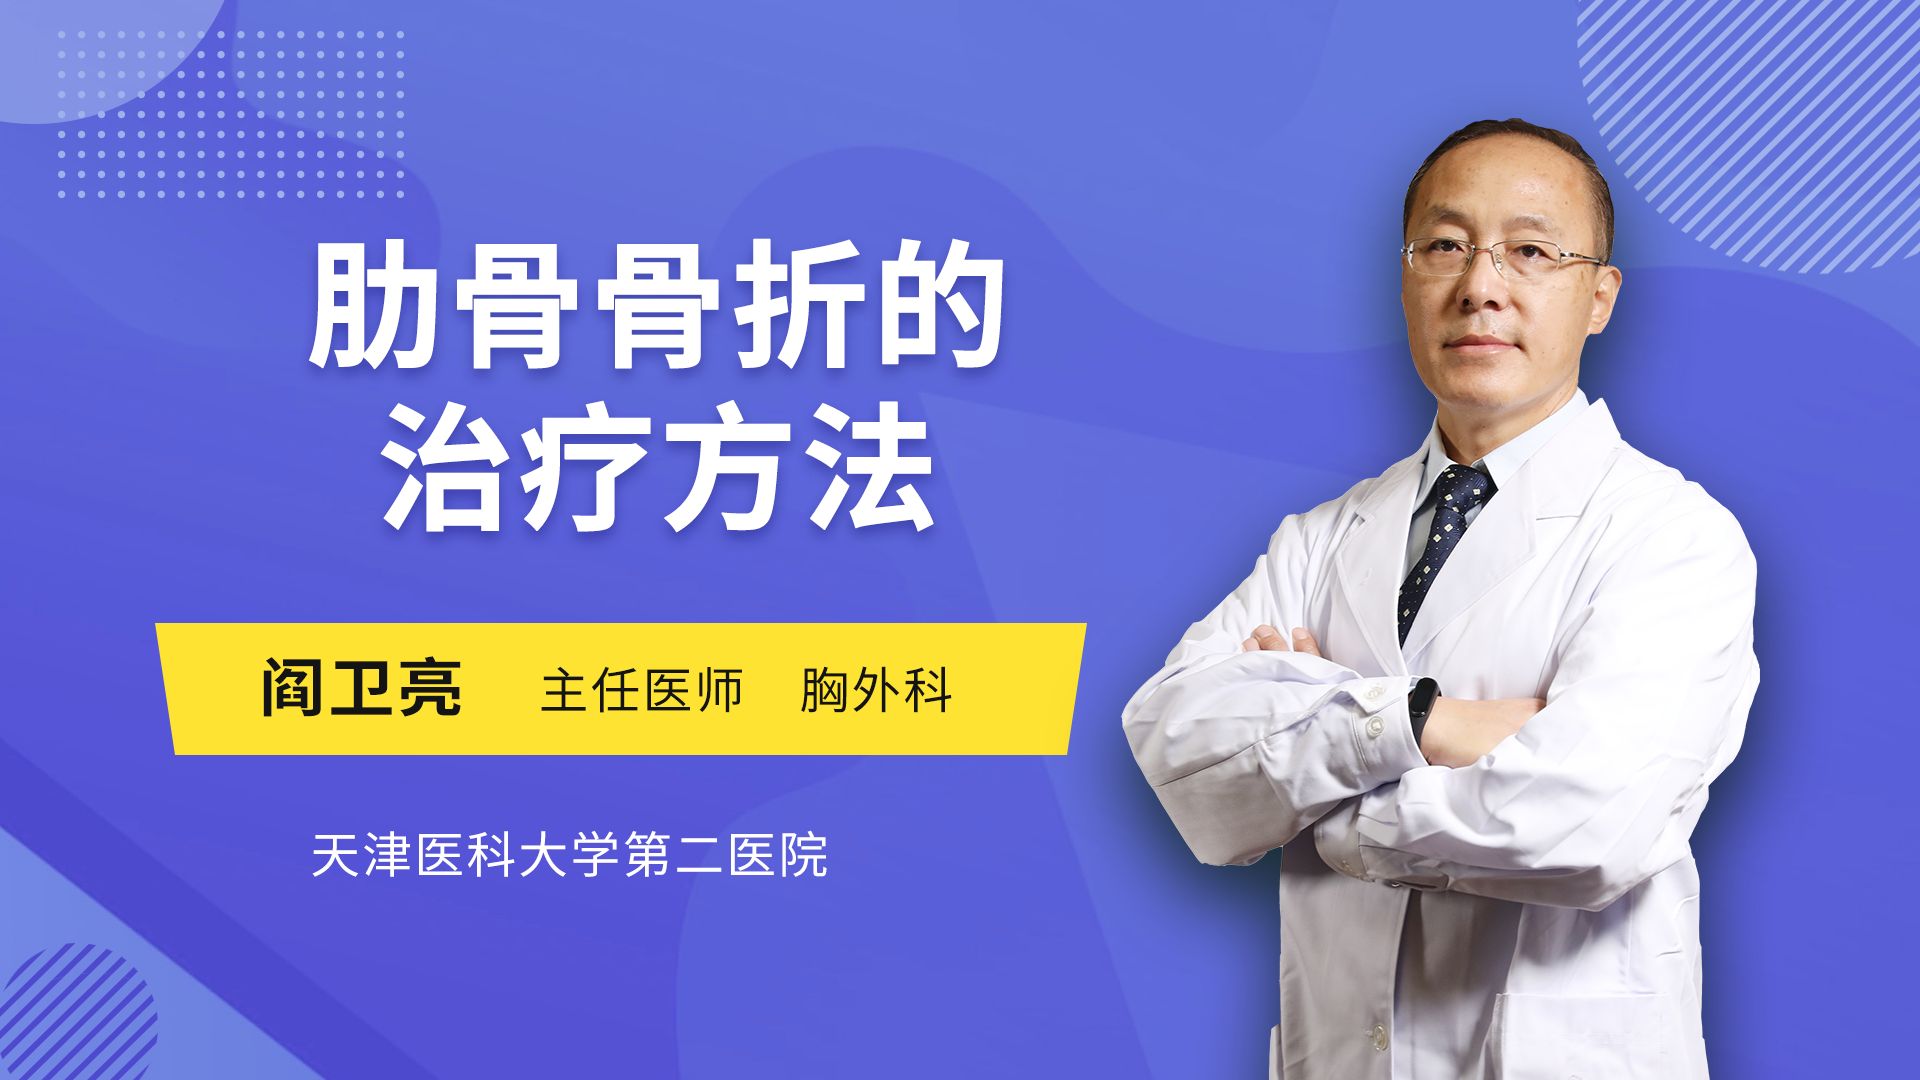 肋骨骨折保守治疗方法 张志功医生视频讲解胸外科疾病 快速问医生